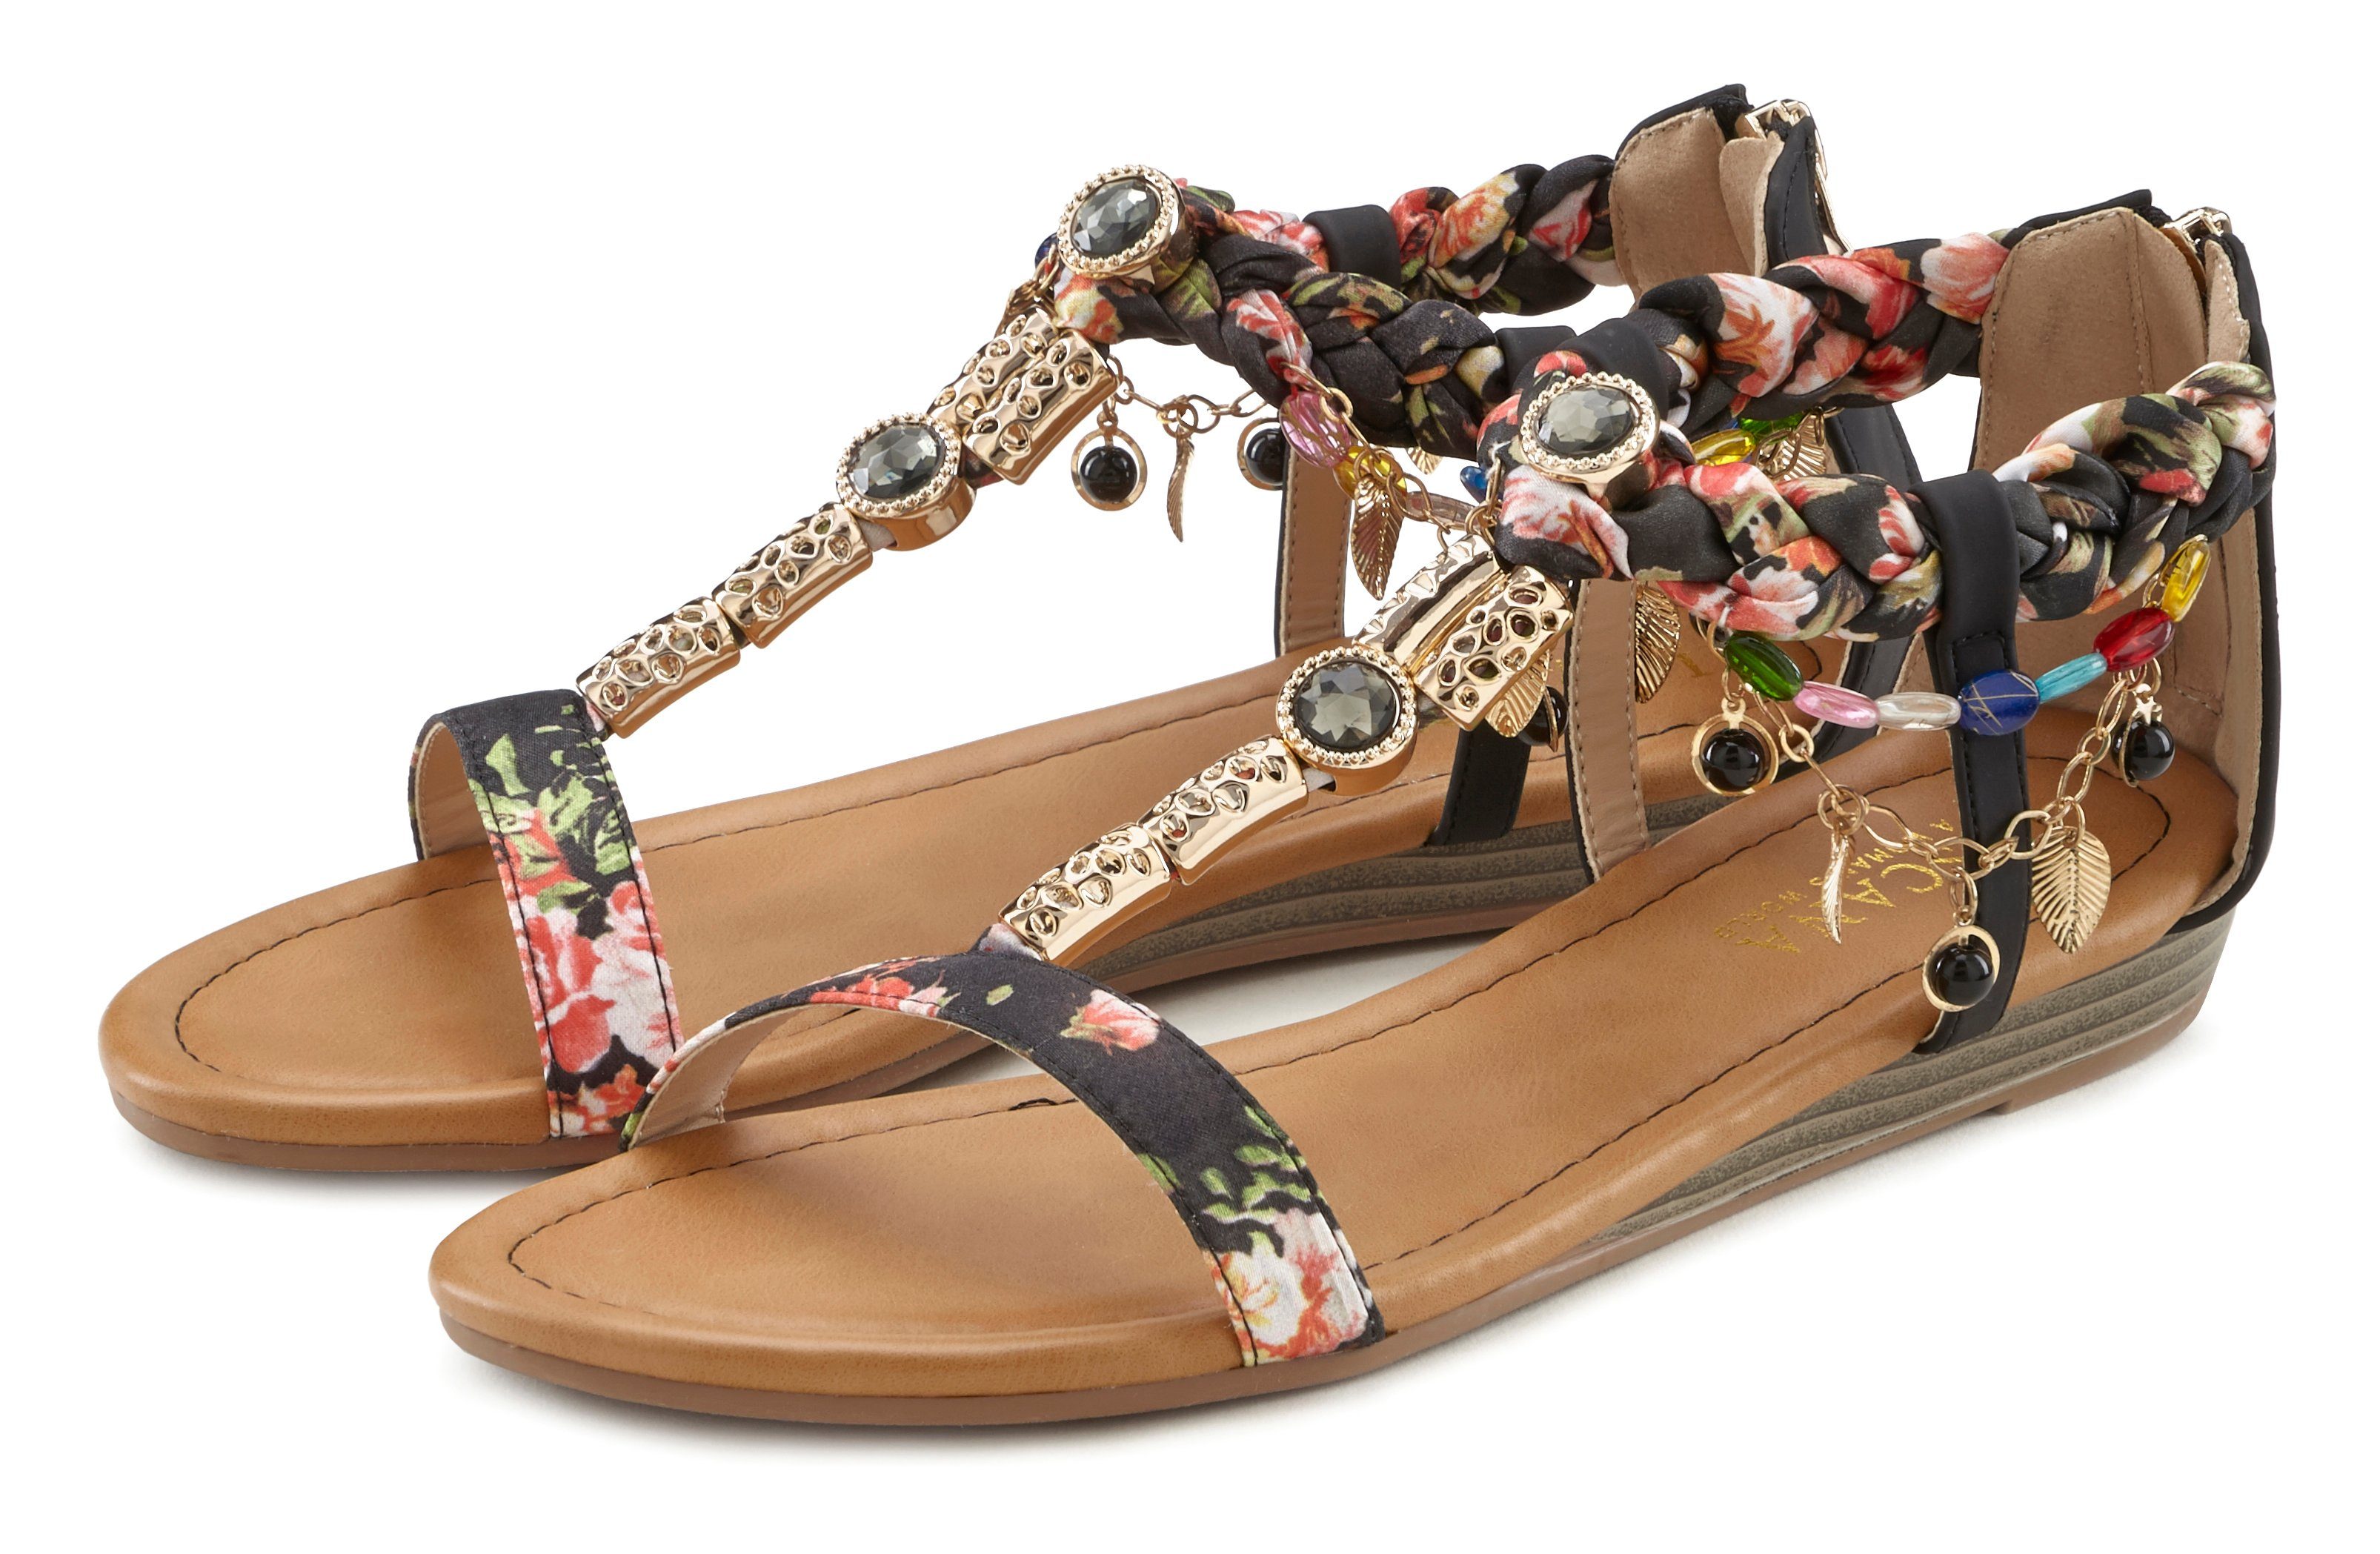 Günstige Sandalen für Damen kaufen » Sandalen SALE | OTTO